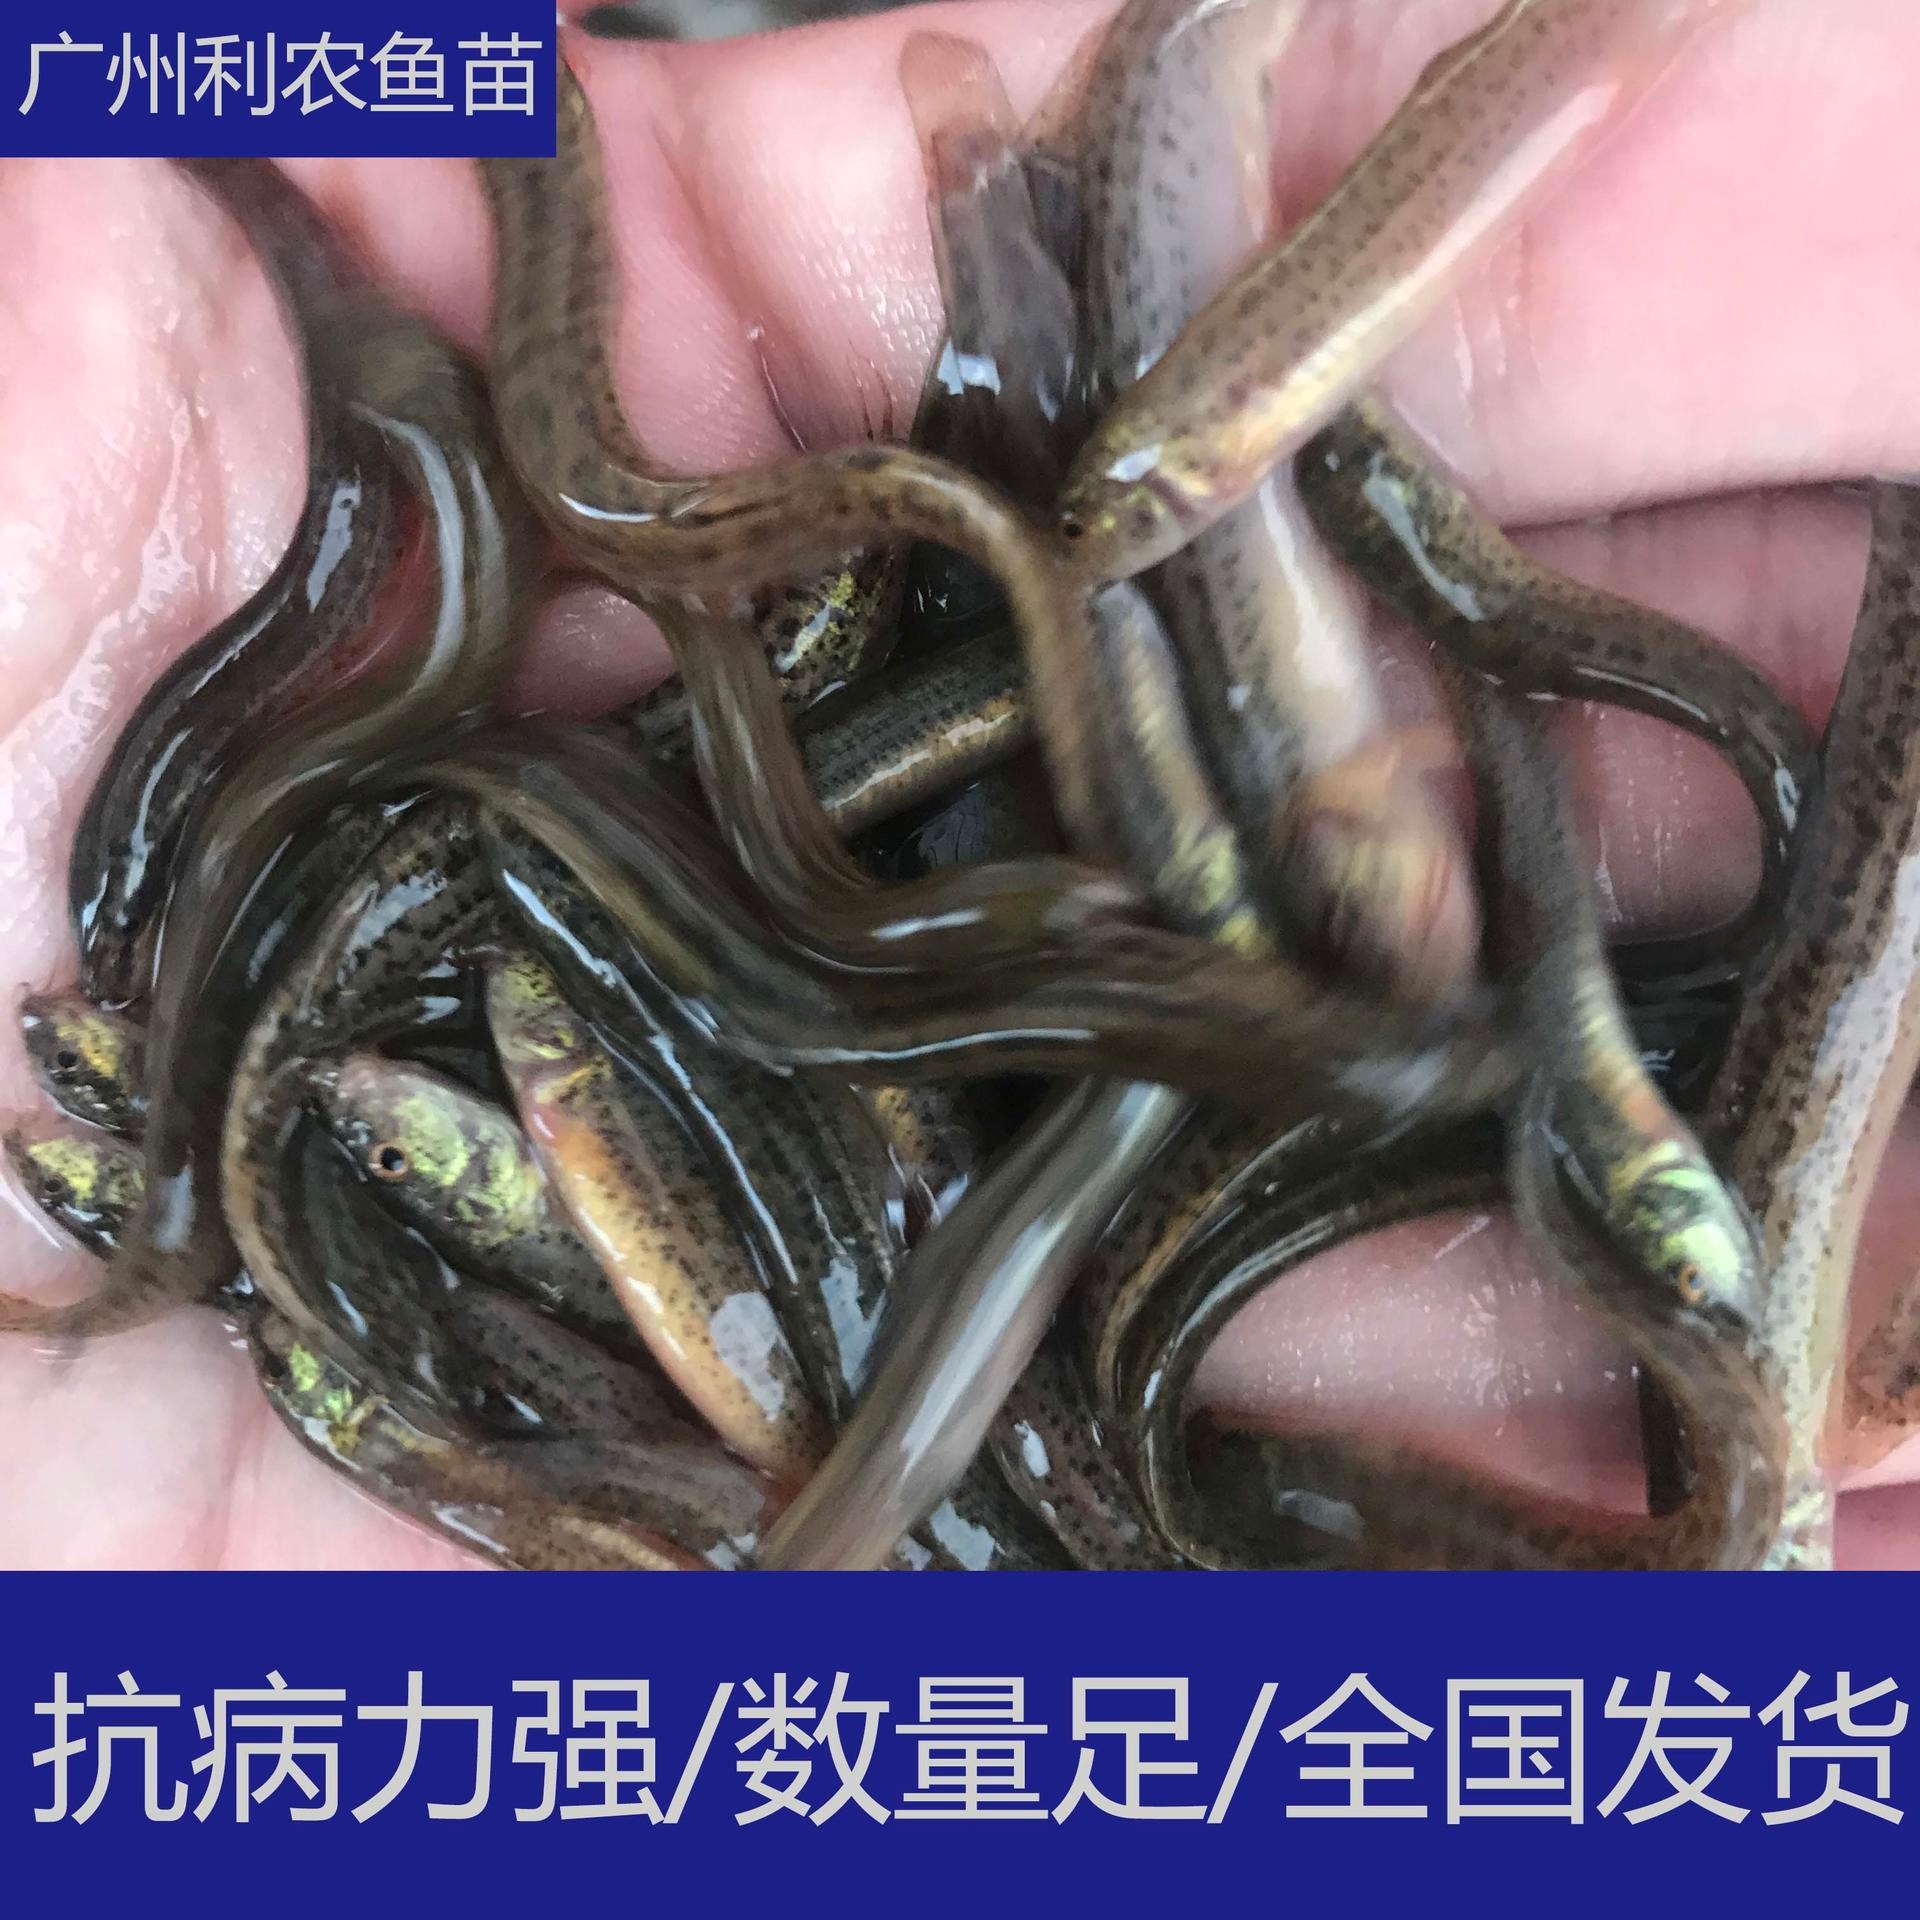 养殖支持 广东中山台湾泥鳅苗少病害好养殖 4-5cm泥鳅苗批发